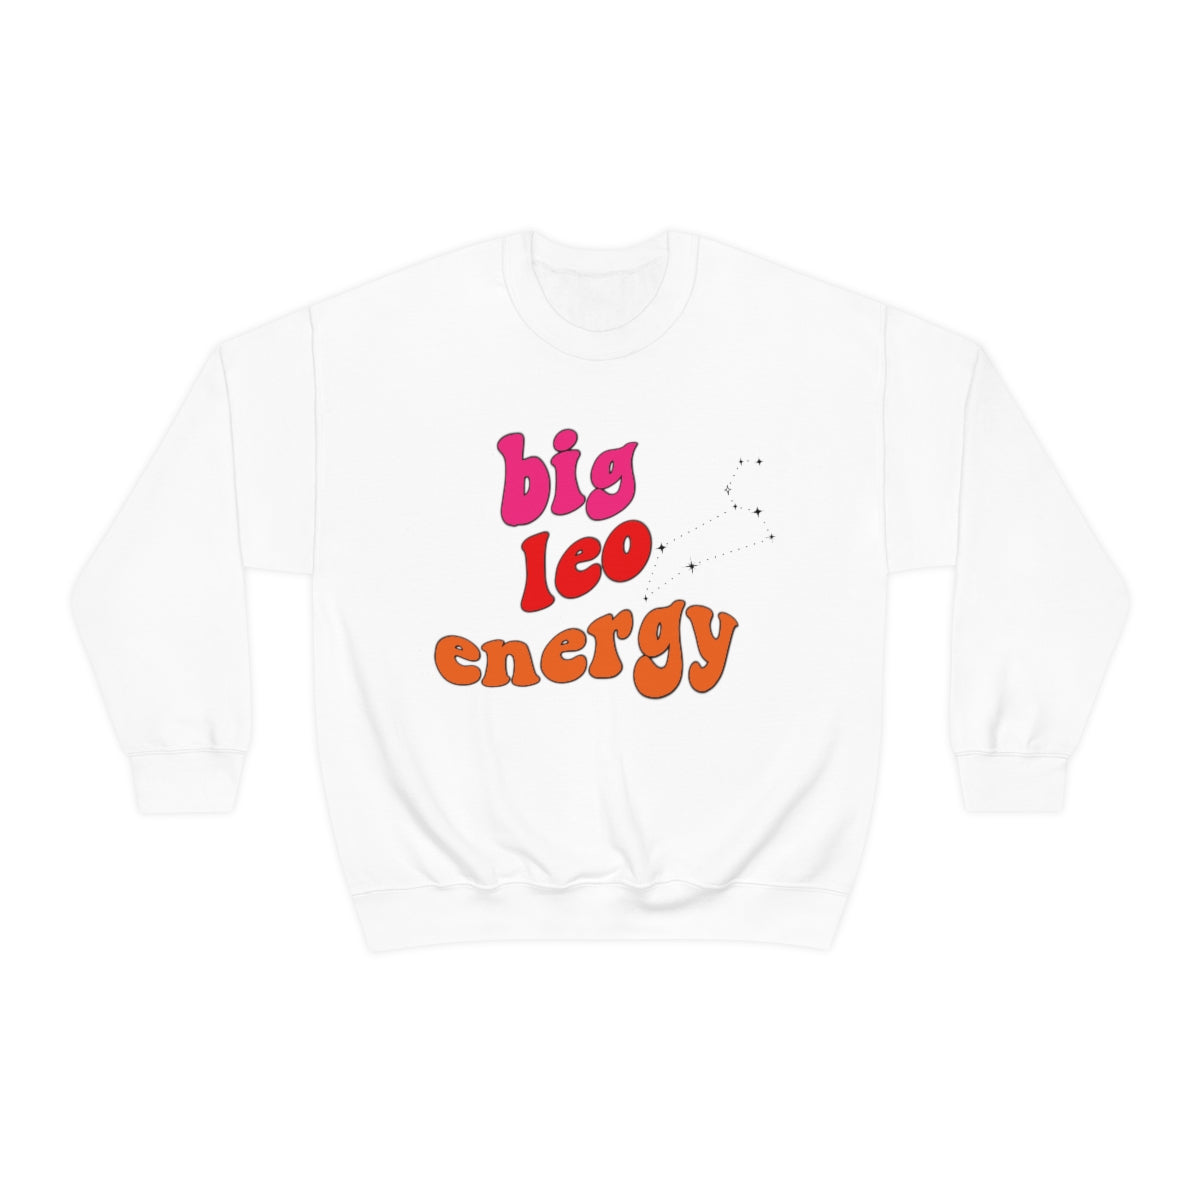 Leo Sweatshirt, Big Leo Energy Sweatshirt, Gift for Leo Astrology lover sweatshirt, Gift for Astrology Lover